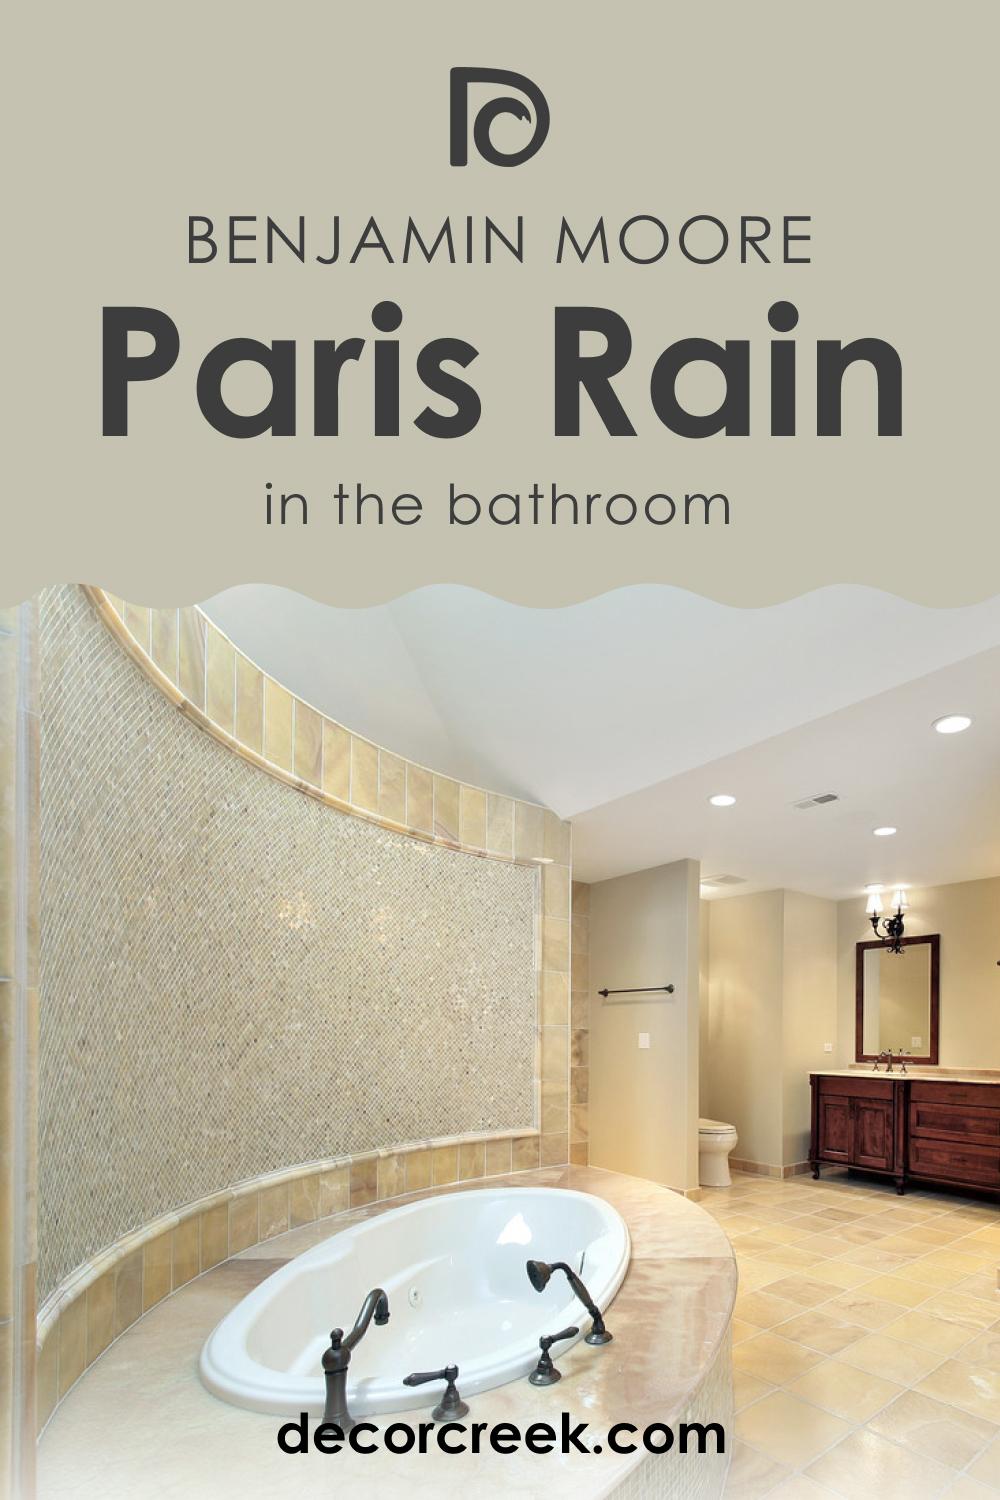 Paris Rain 1501 in the Bathroom